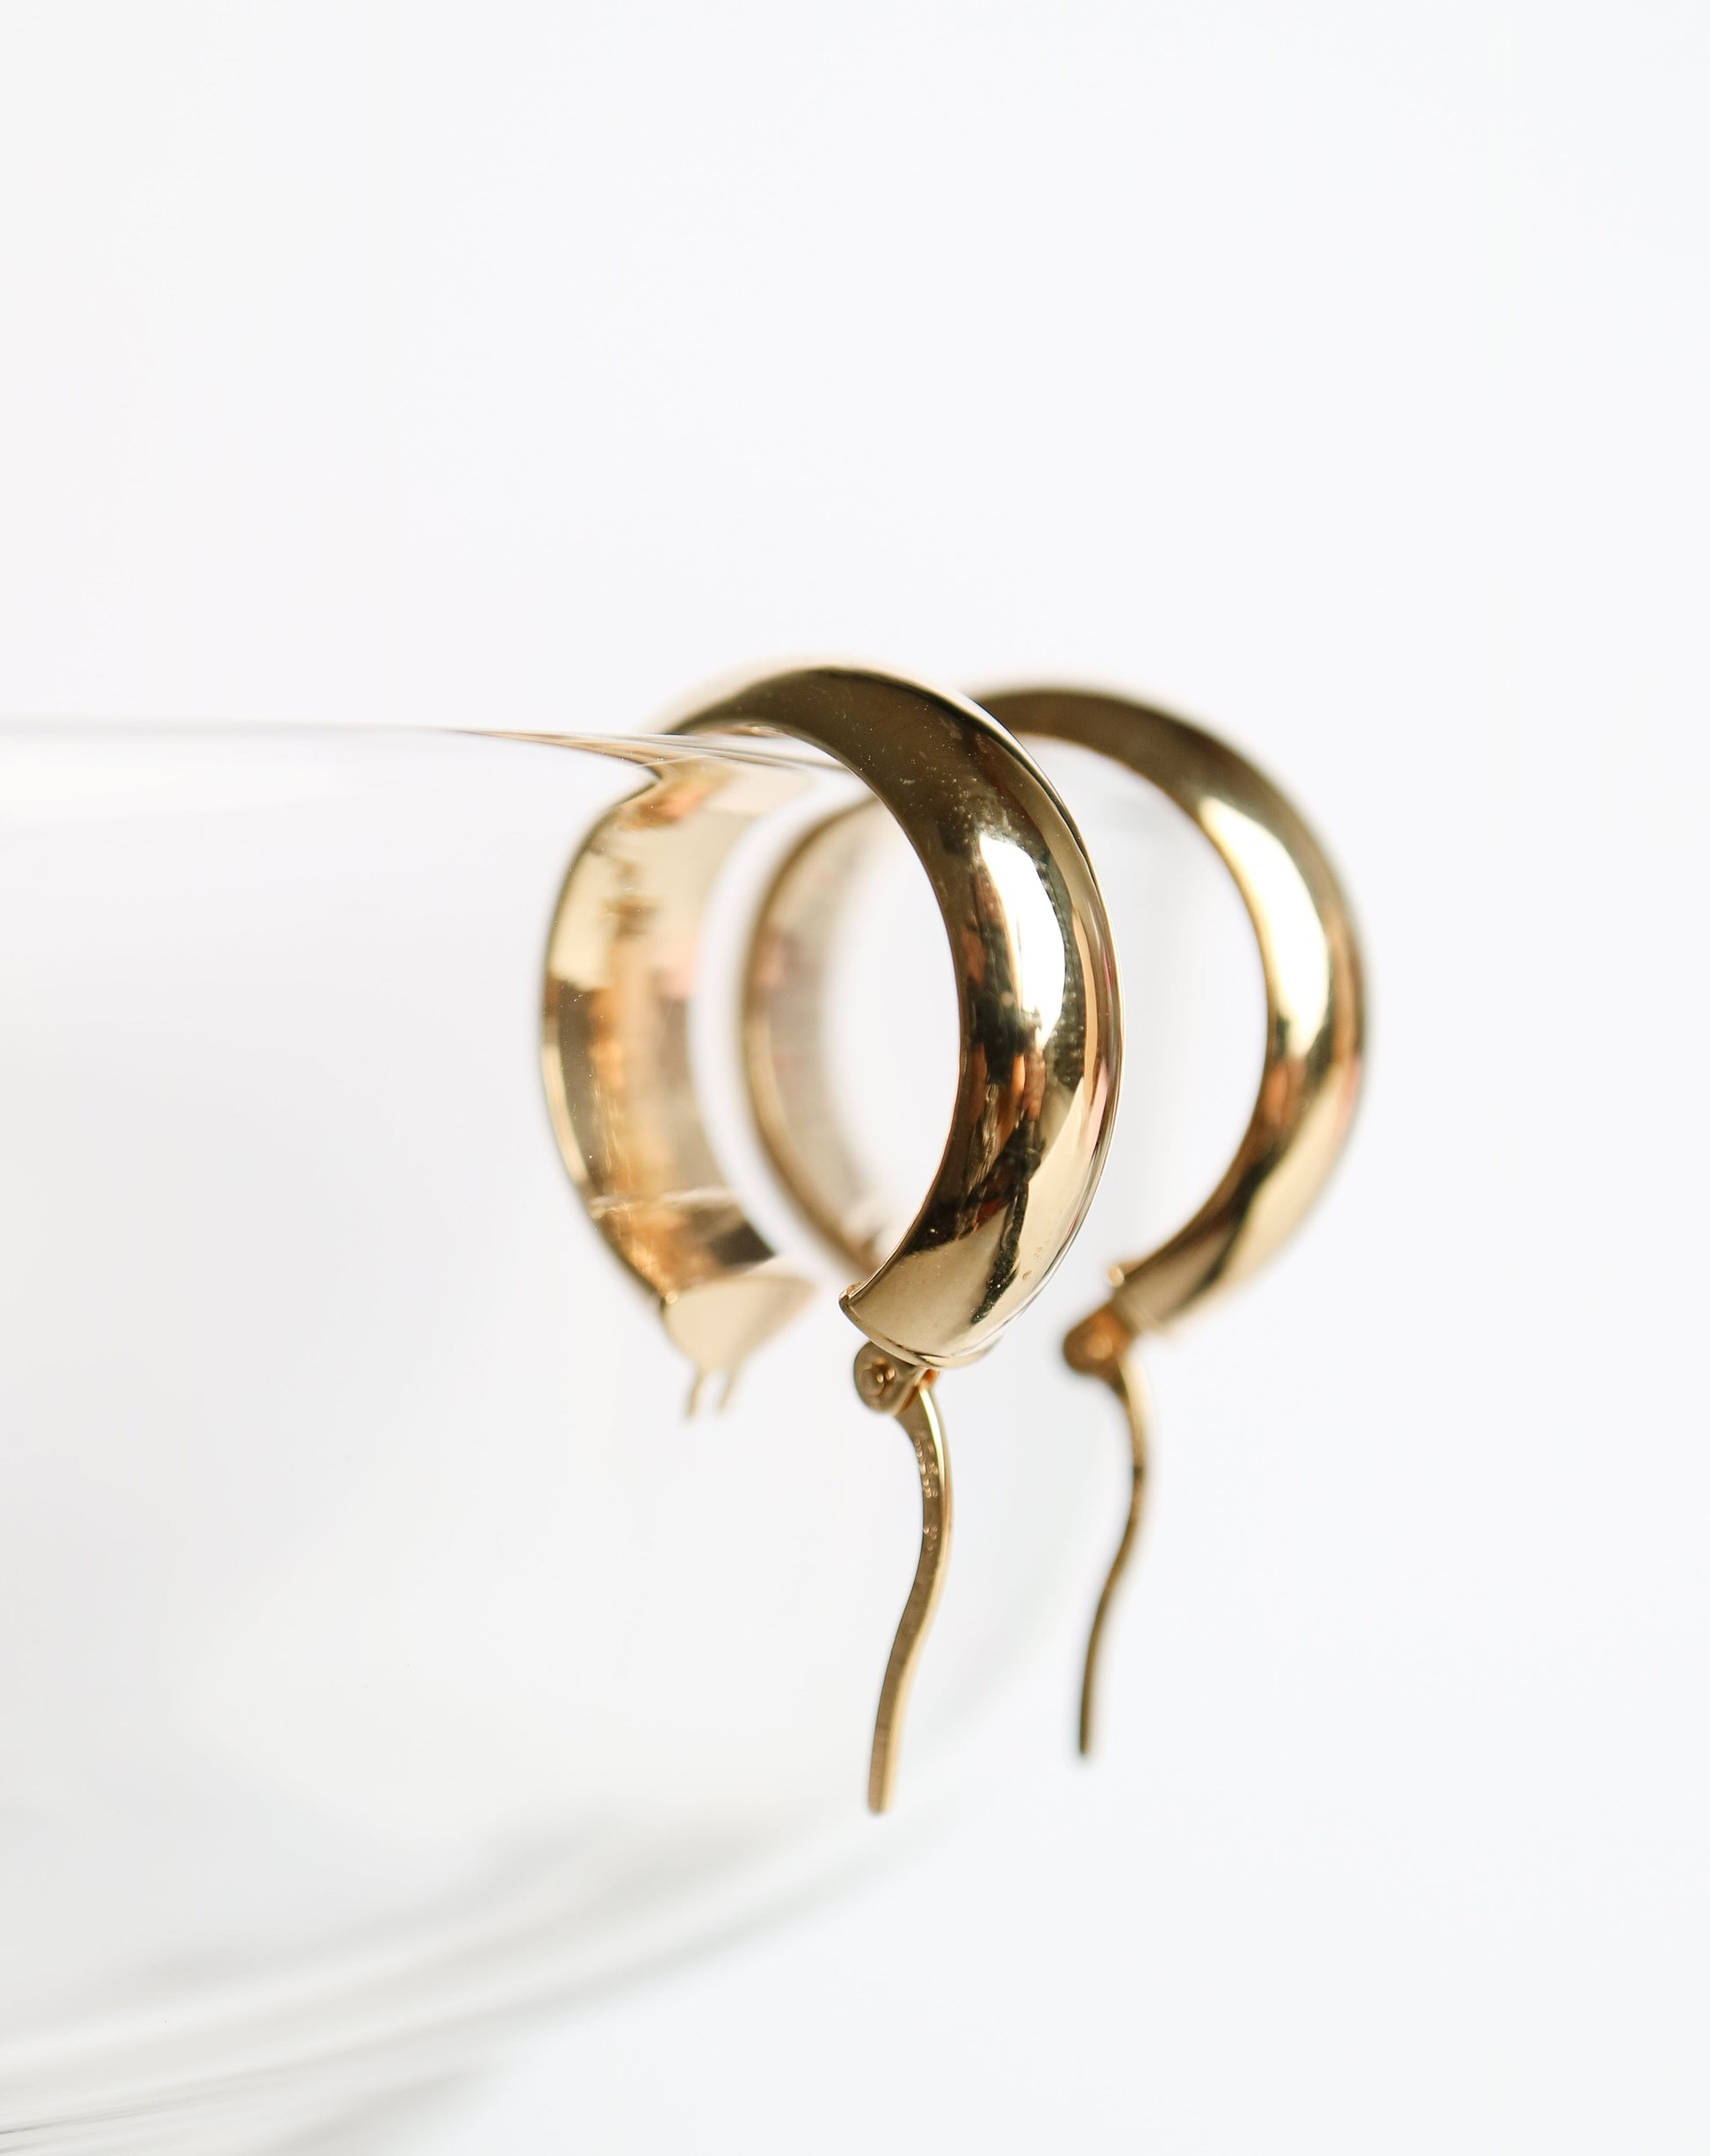 9ct gold Hoop Earrings